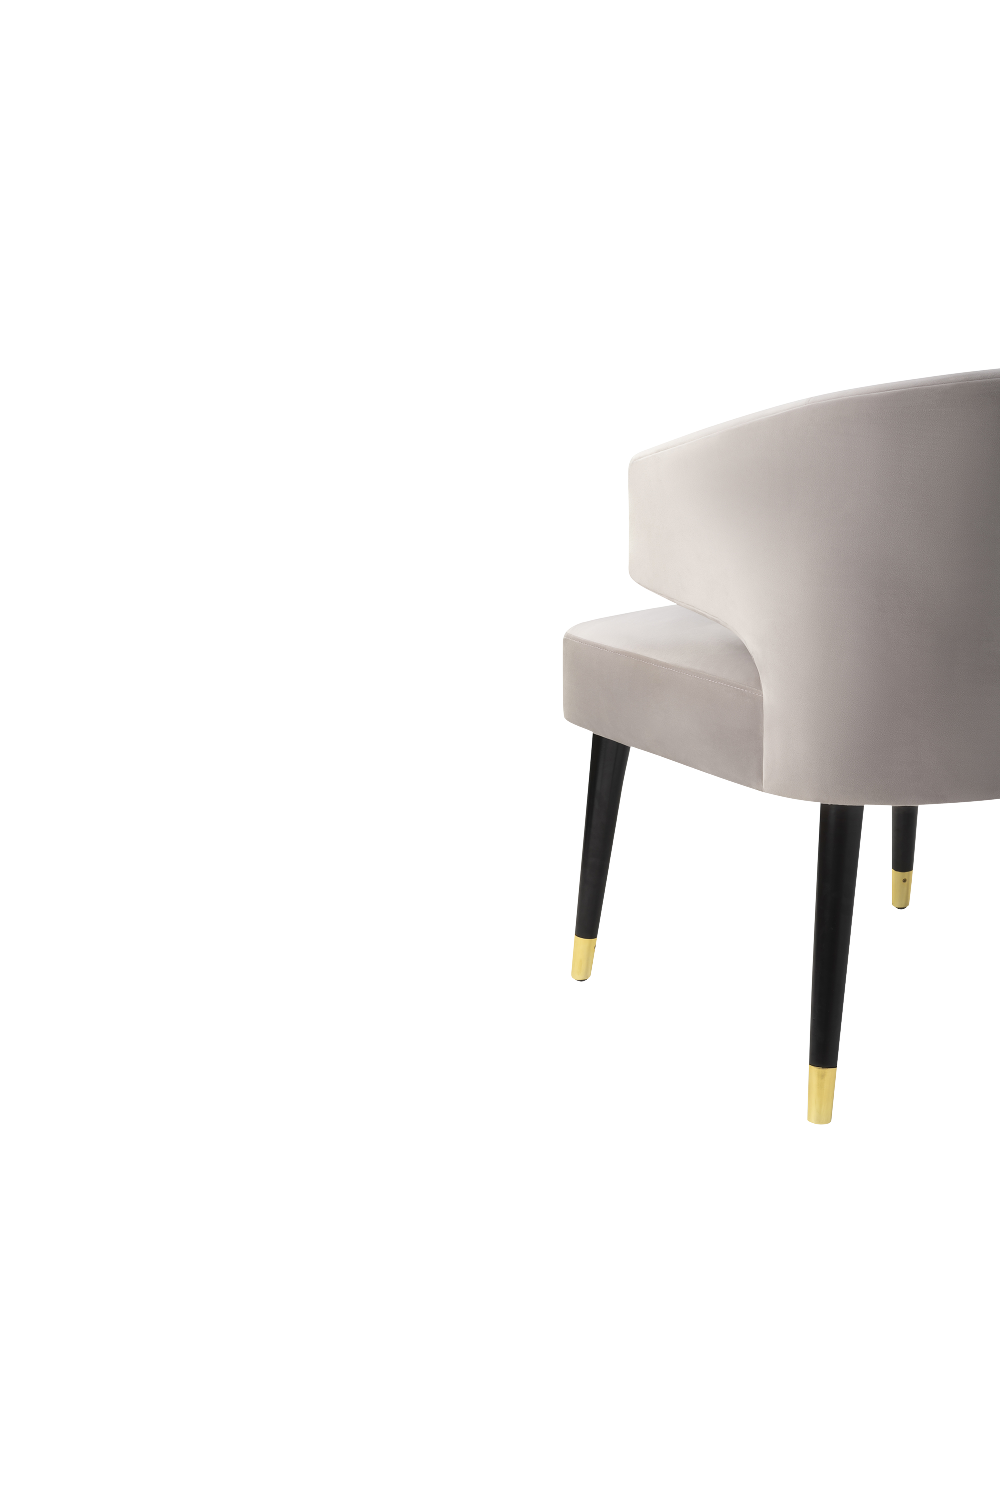 Limestone Velvet Upholstered Dining Chair | Liang & Eimil Mia | OROA